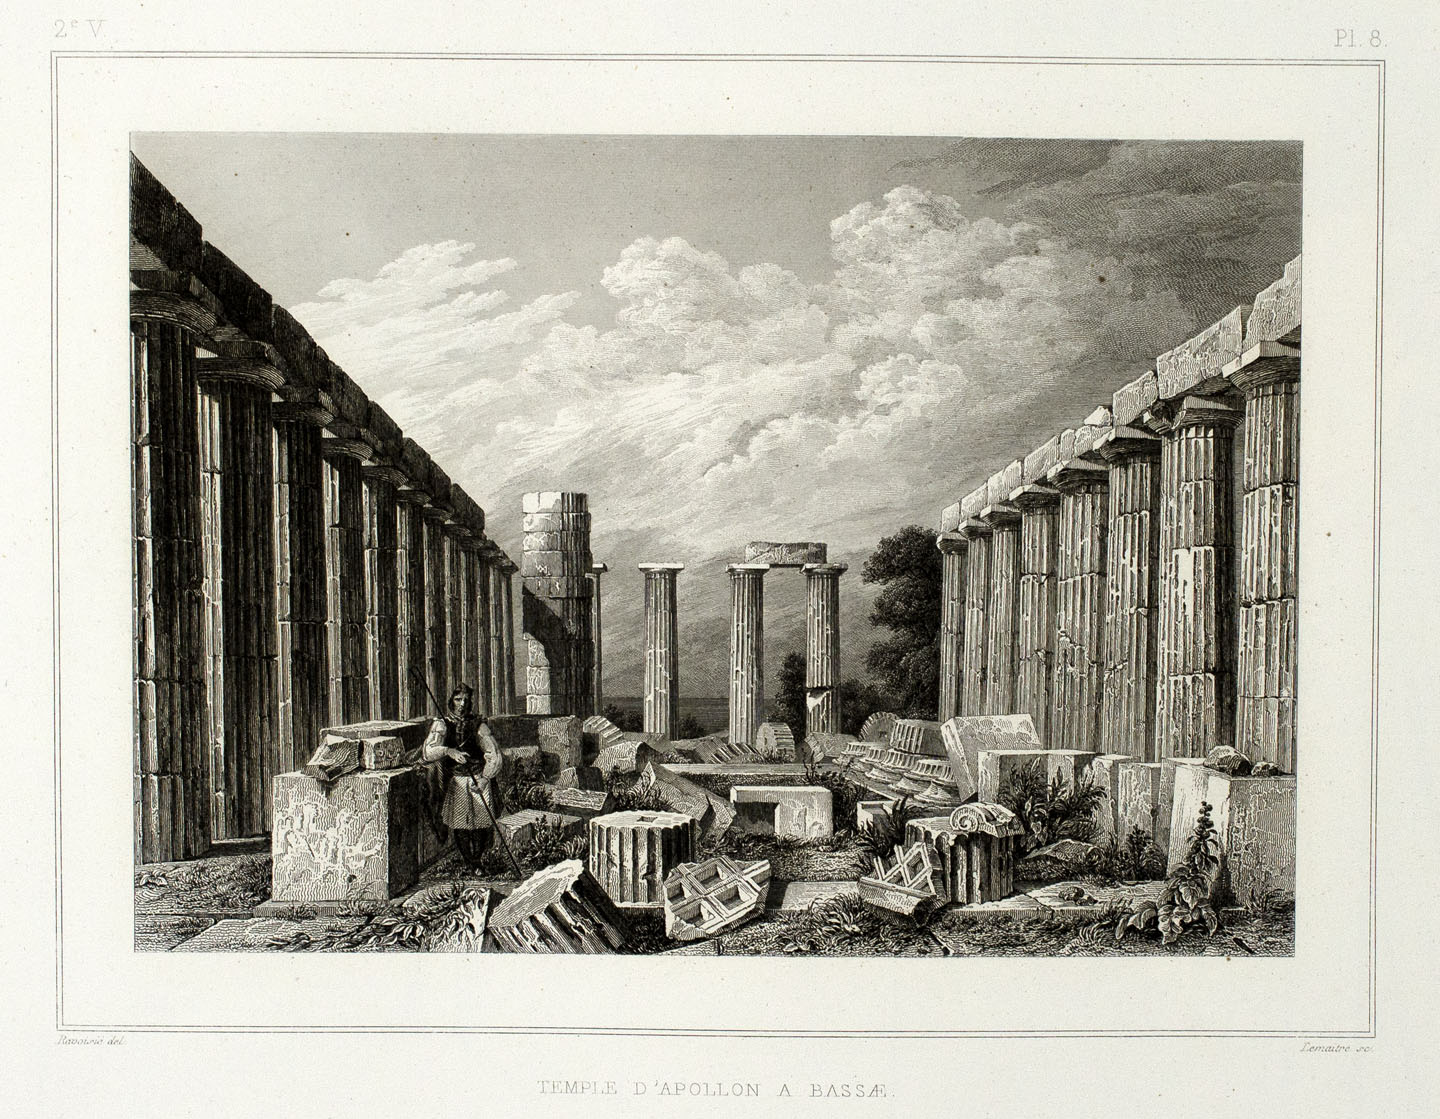 Temple d'Apollon à Bassae